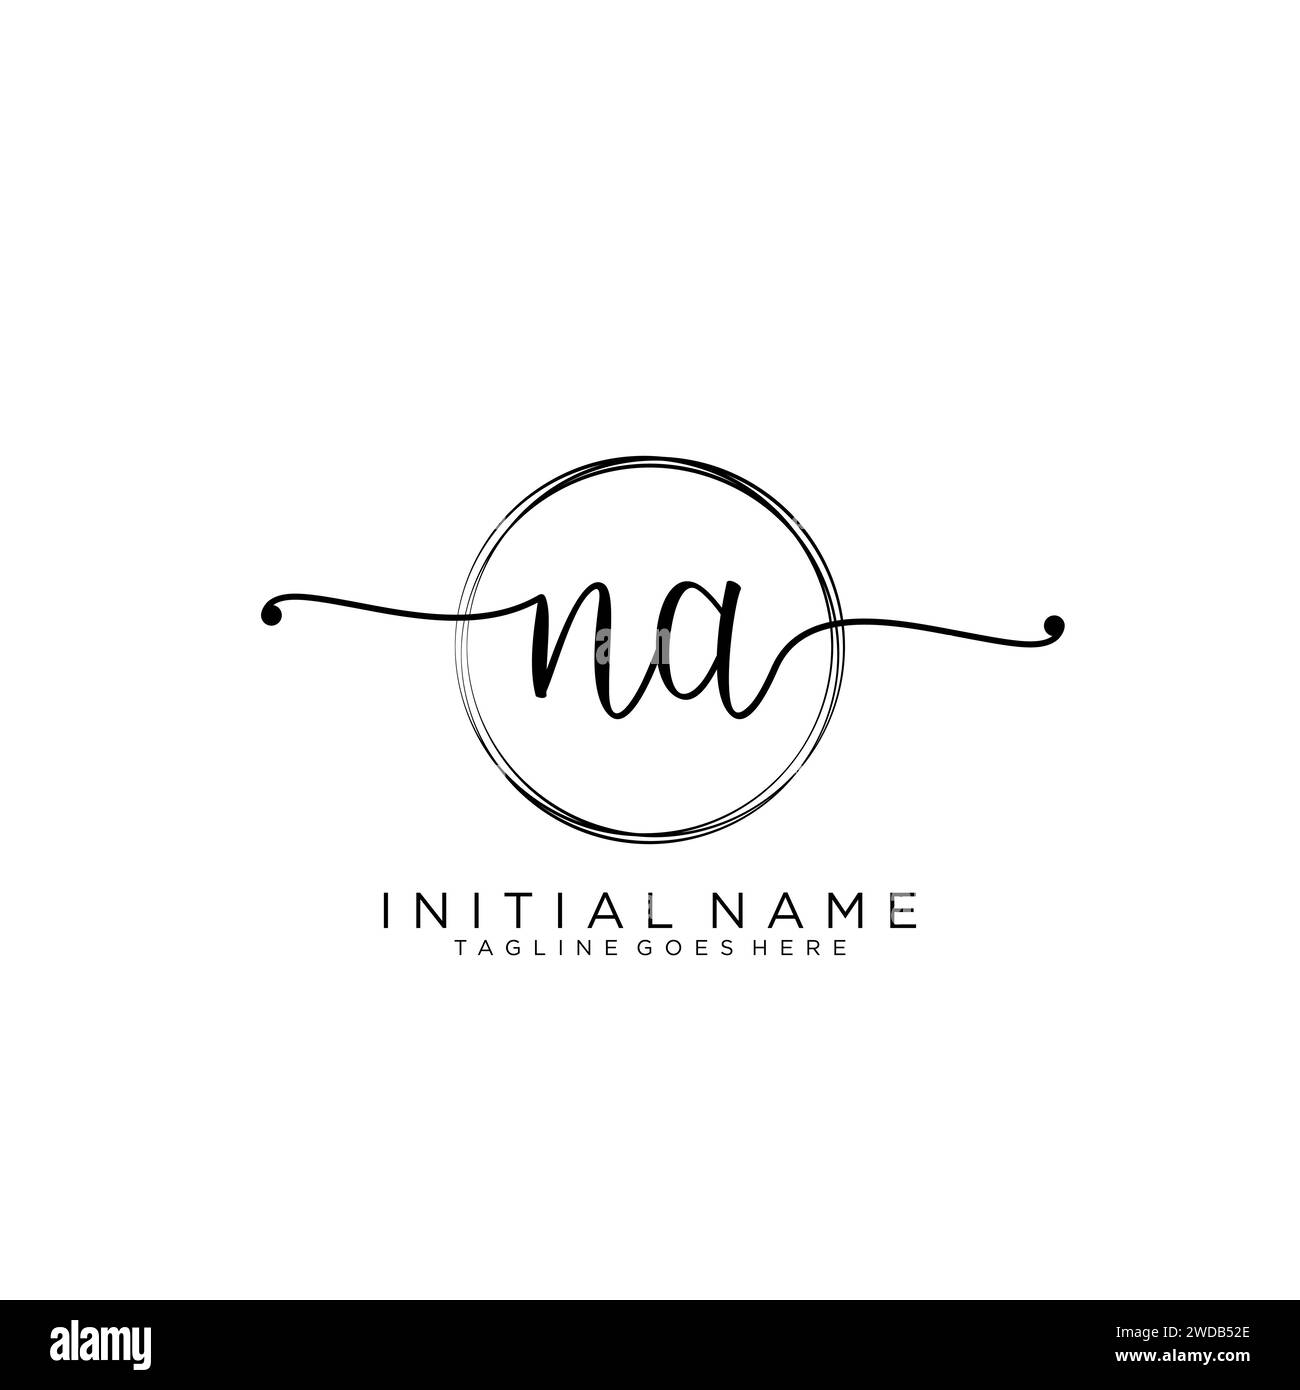 NA Initial handwriting logo with circle Stock Vector